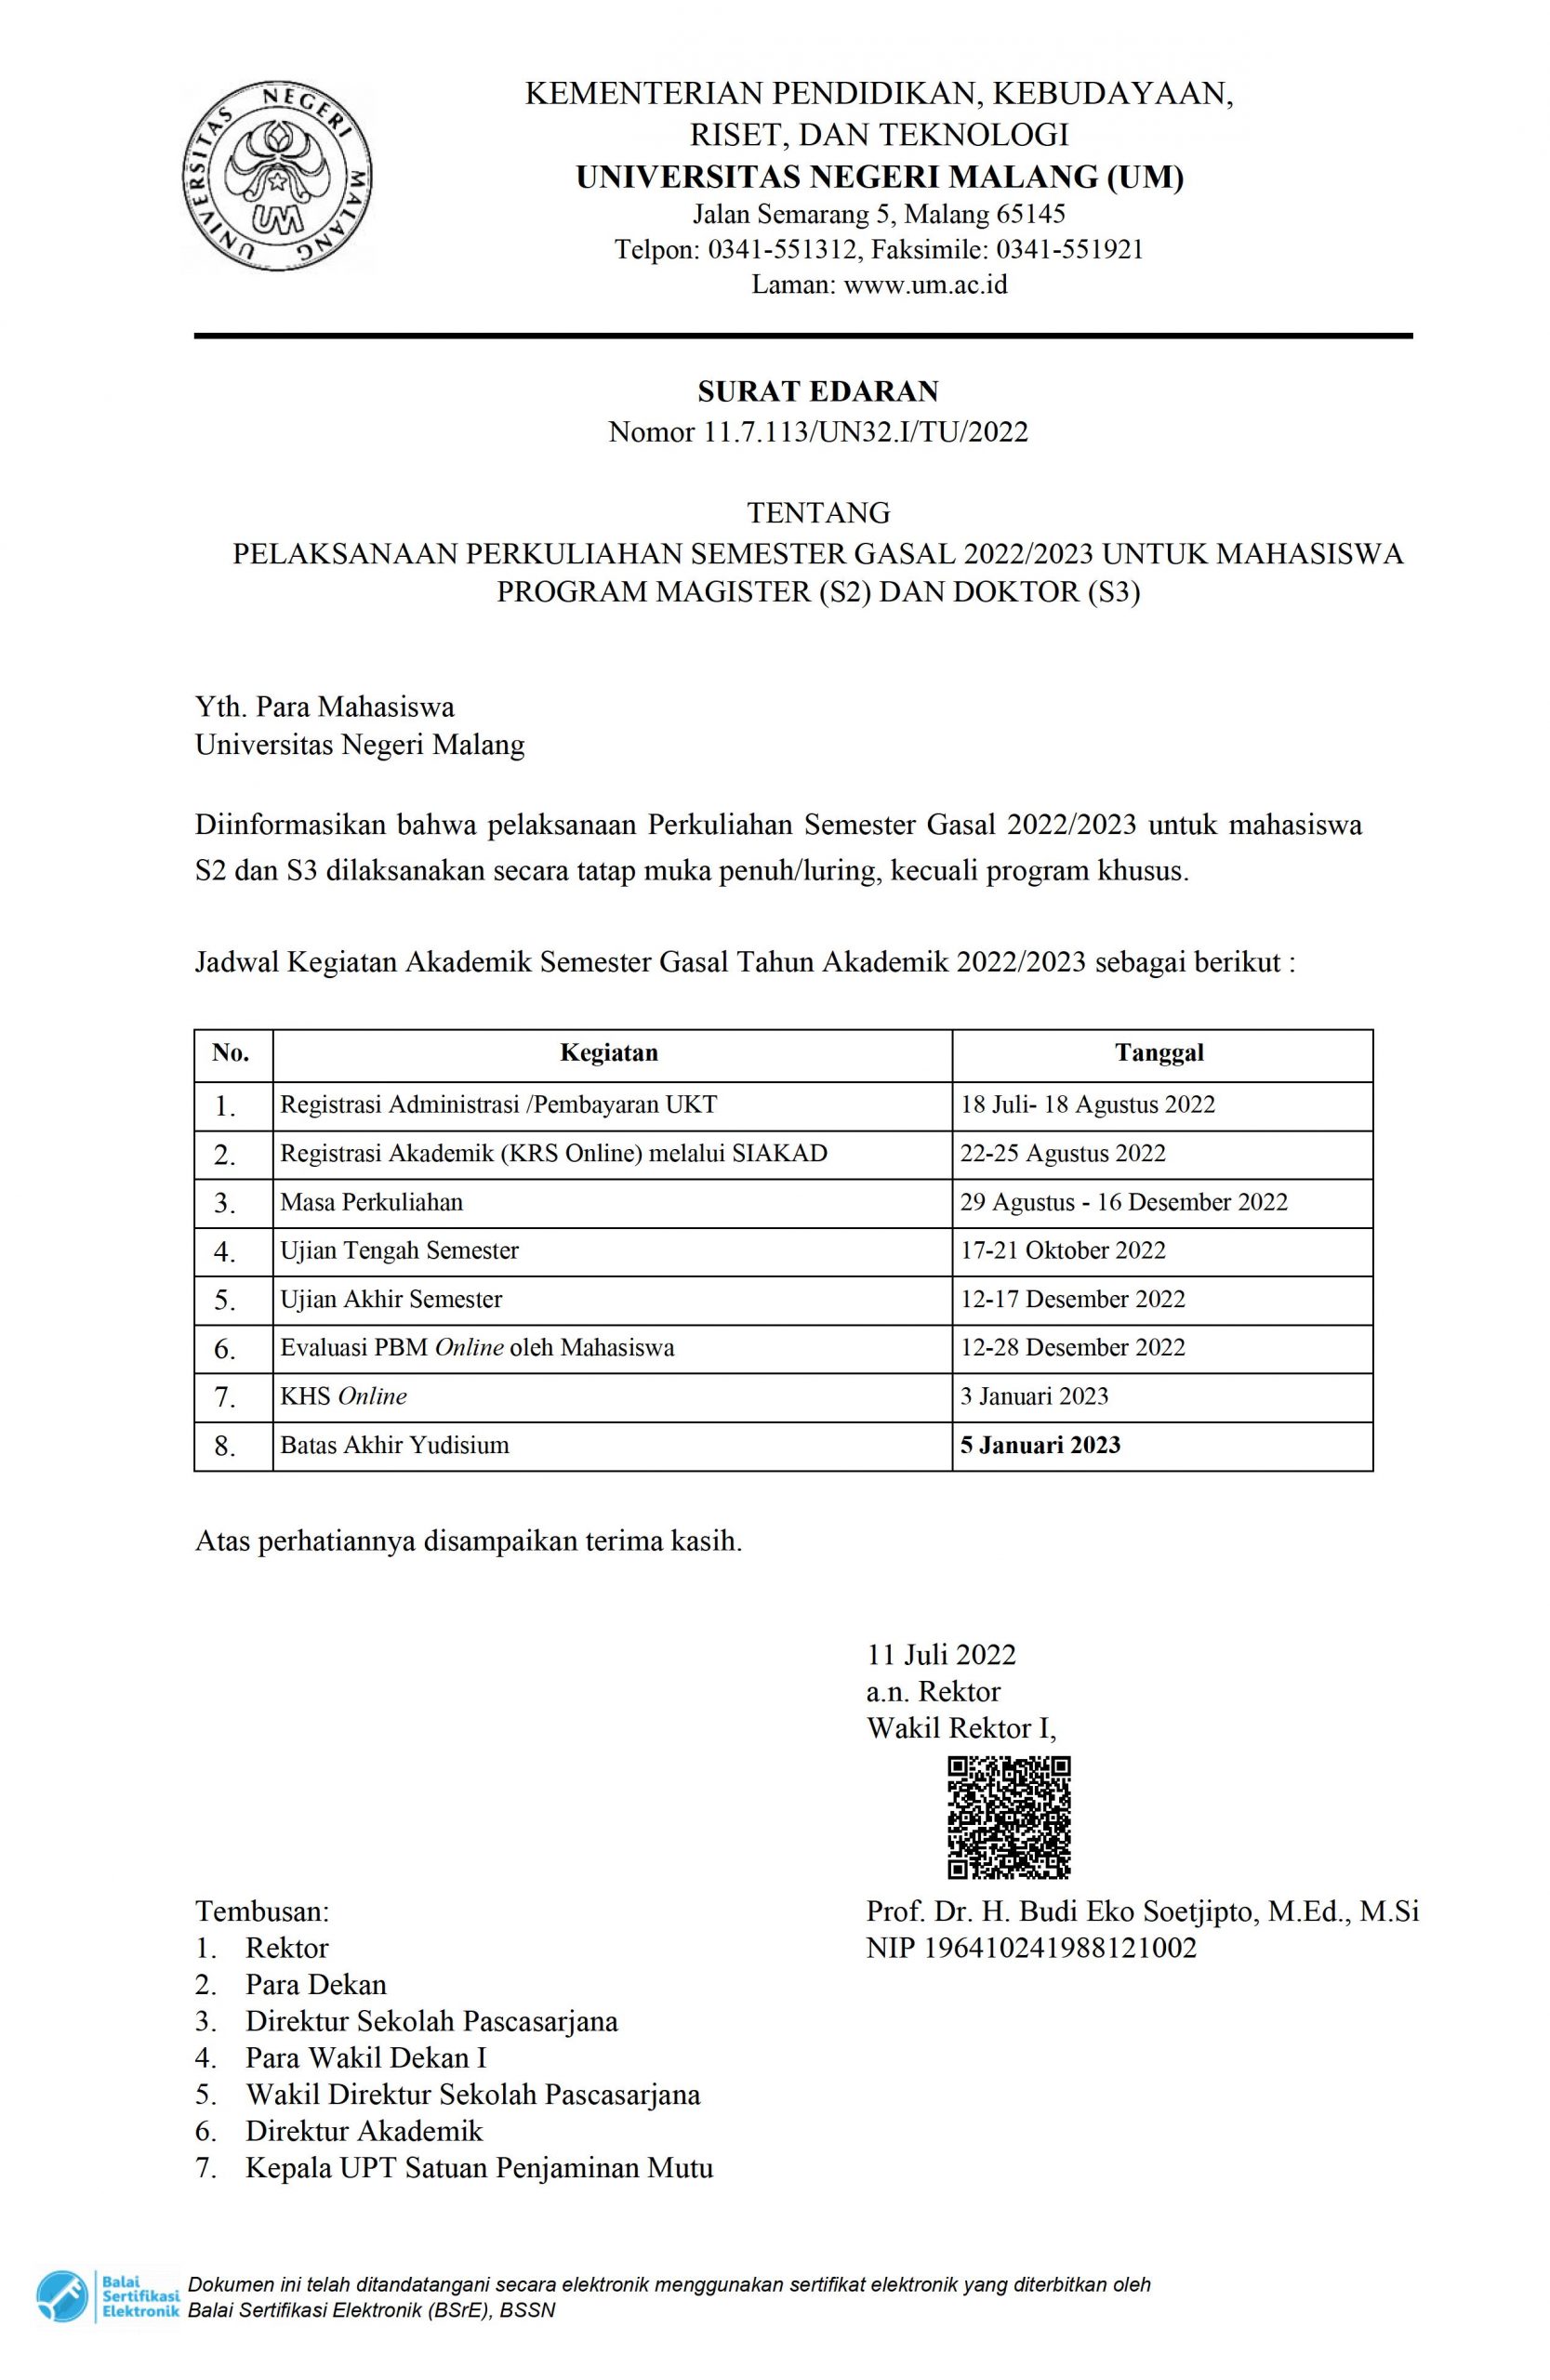 PELAKSANAAN PERKULIAHAN SEMESTER GASAL 2022/2023 UNTUK MAHASISWA PROGRAM MAGISTER (S2) DAN DOKTOR (S3)